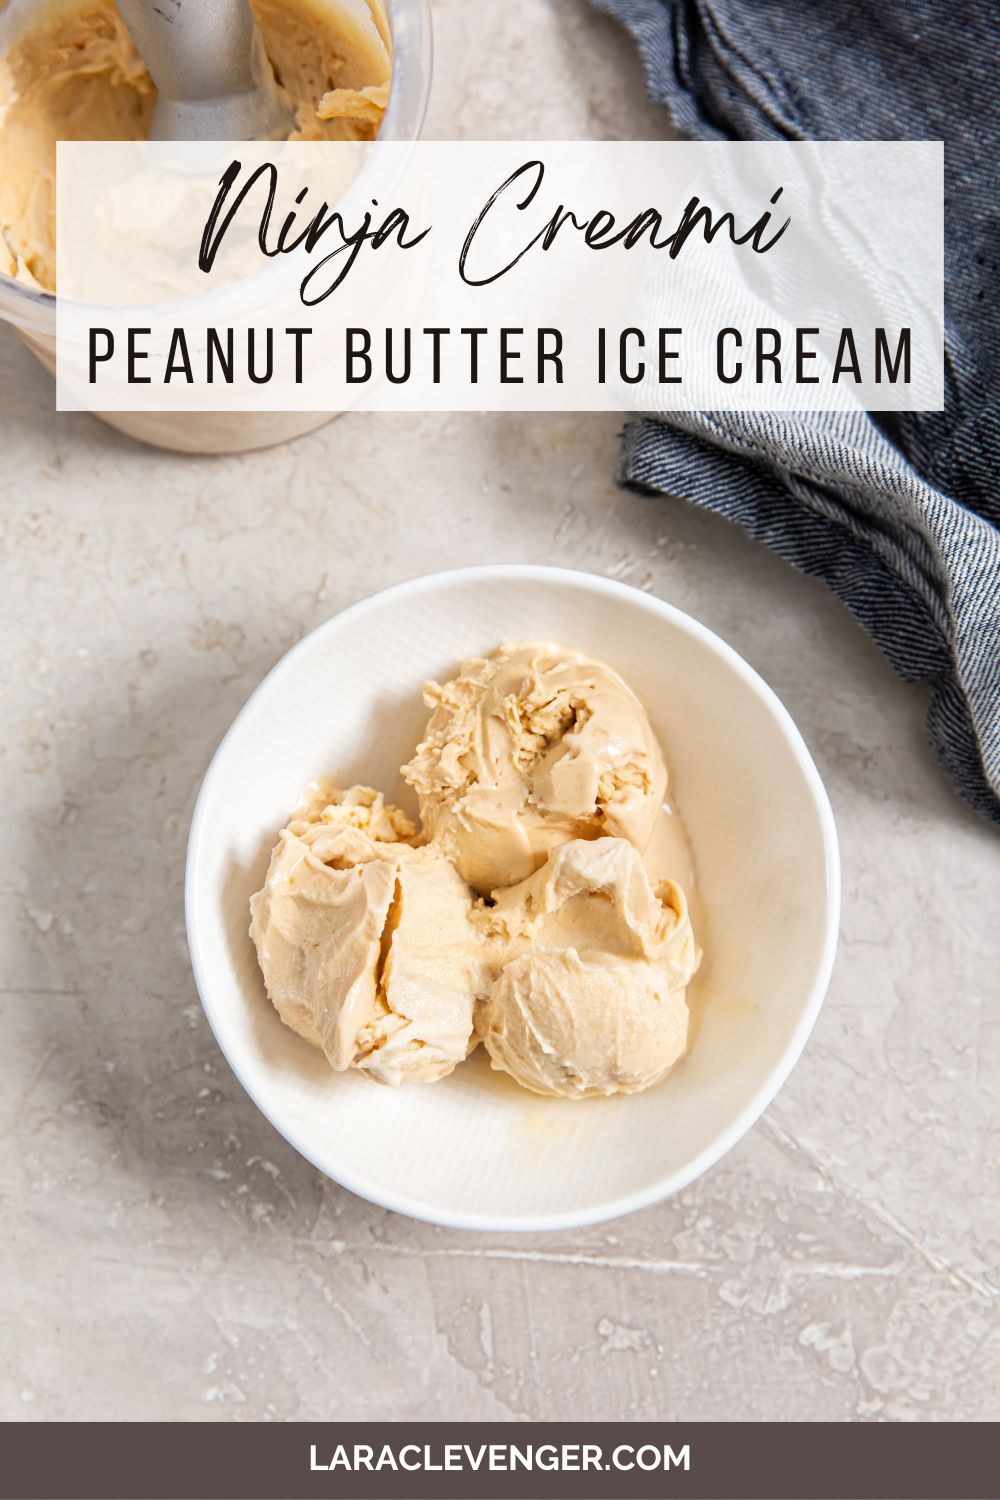 The Best Reese's Peanut Butter Ninja Creami Protein Ice Cream